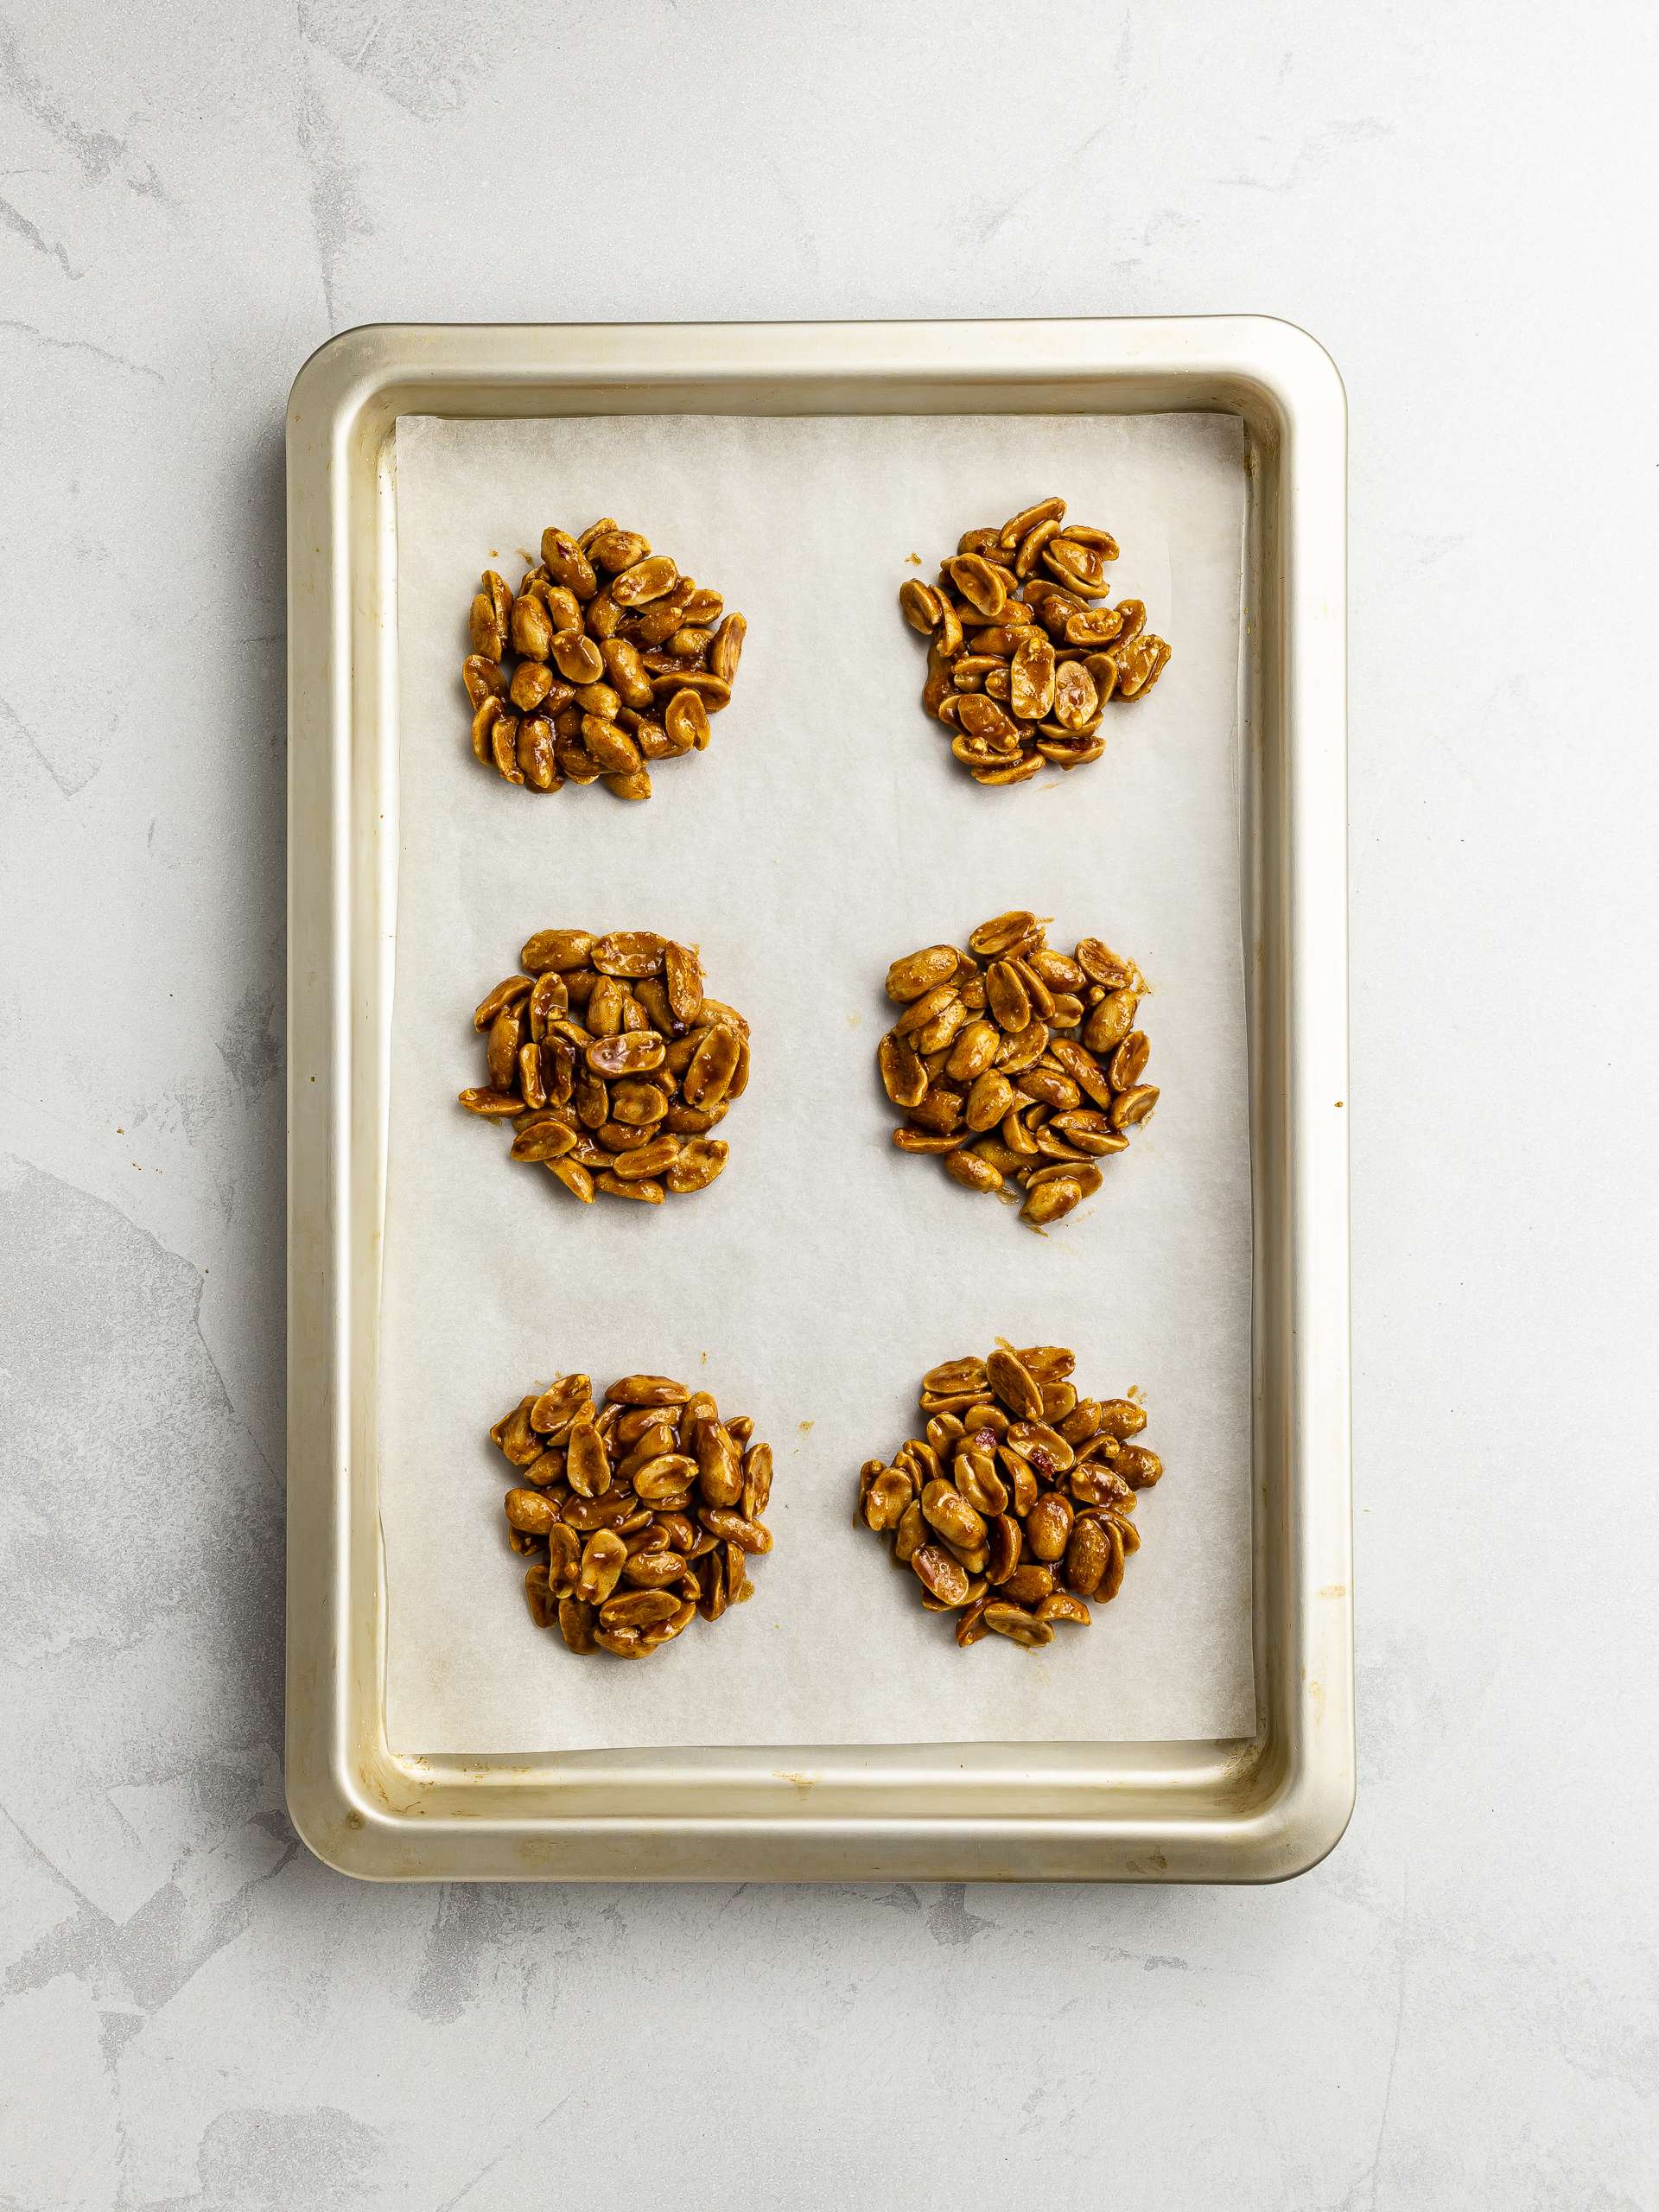 peanut drops on a baking tray